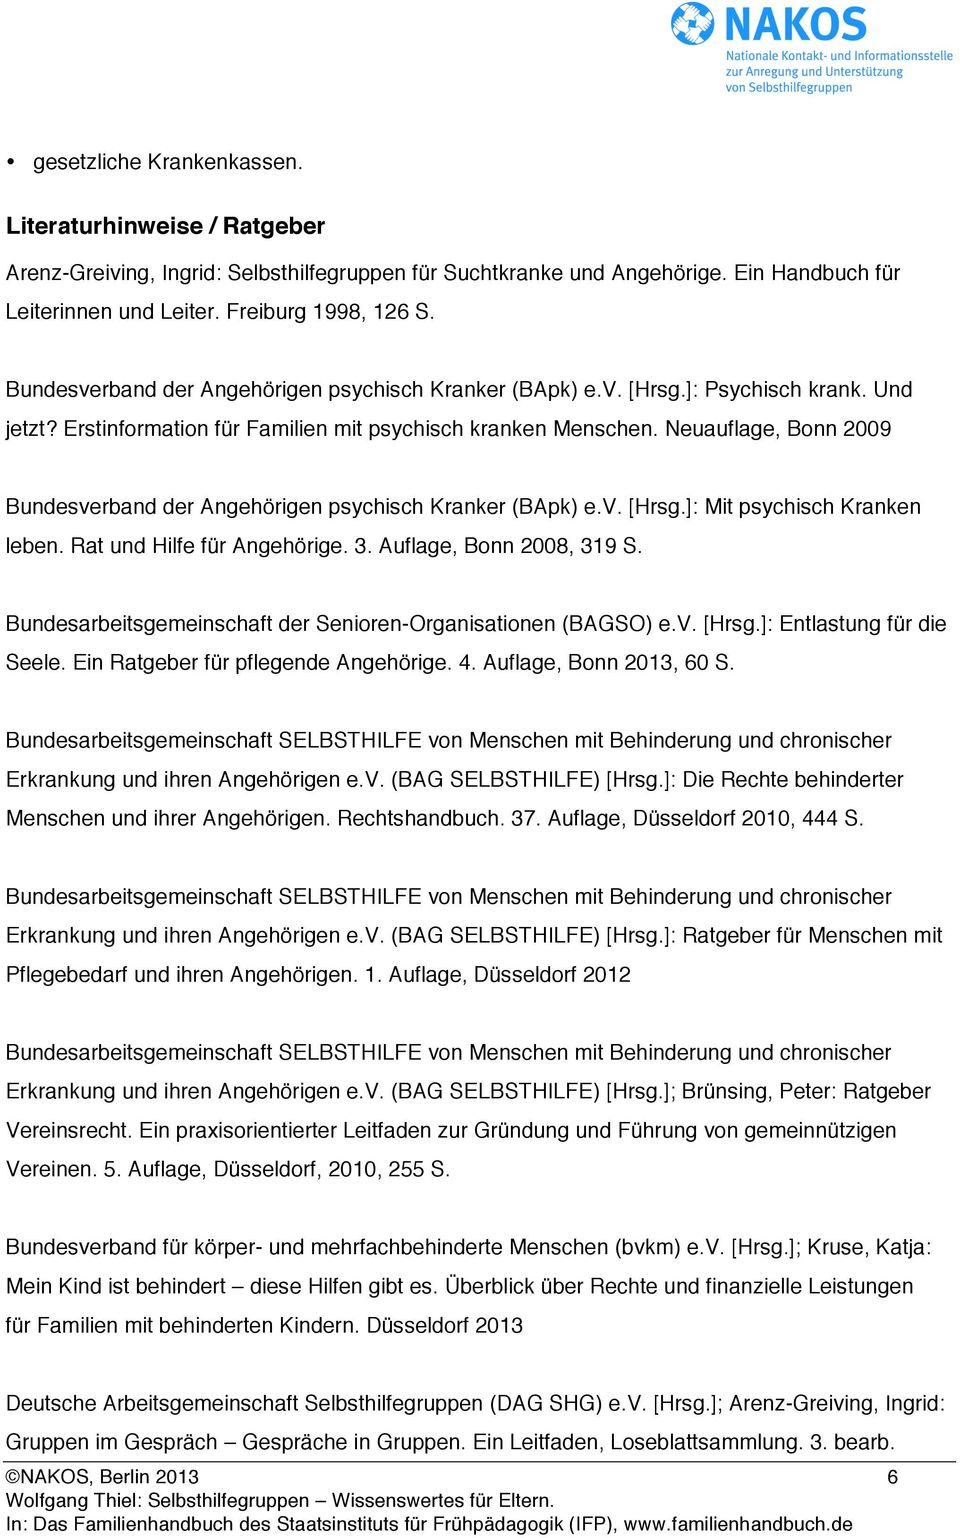 Neuauflage, Bonn 2009 Bundesverband der Angehörigen psychisch Kranker (BApk) e.v. [Hrsg.]: Mit psychisch Kranken leben. Rat und Hilfe für Angehörige. 3. Auflage, Bonn 2008, 319 S.